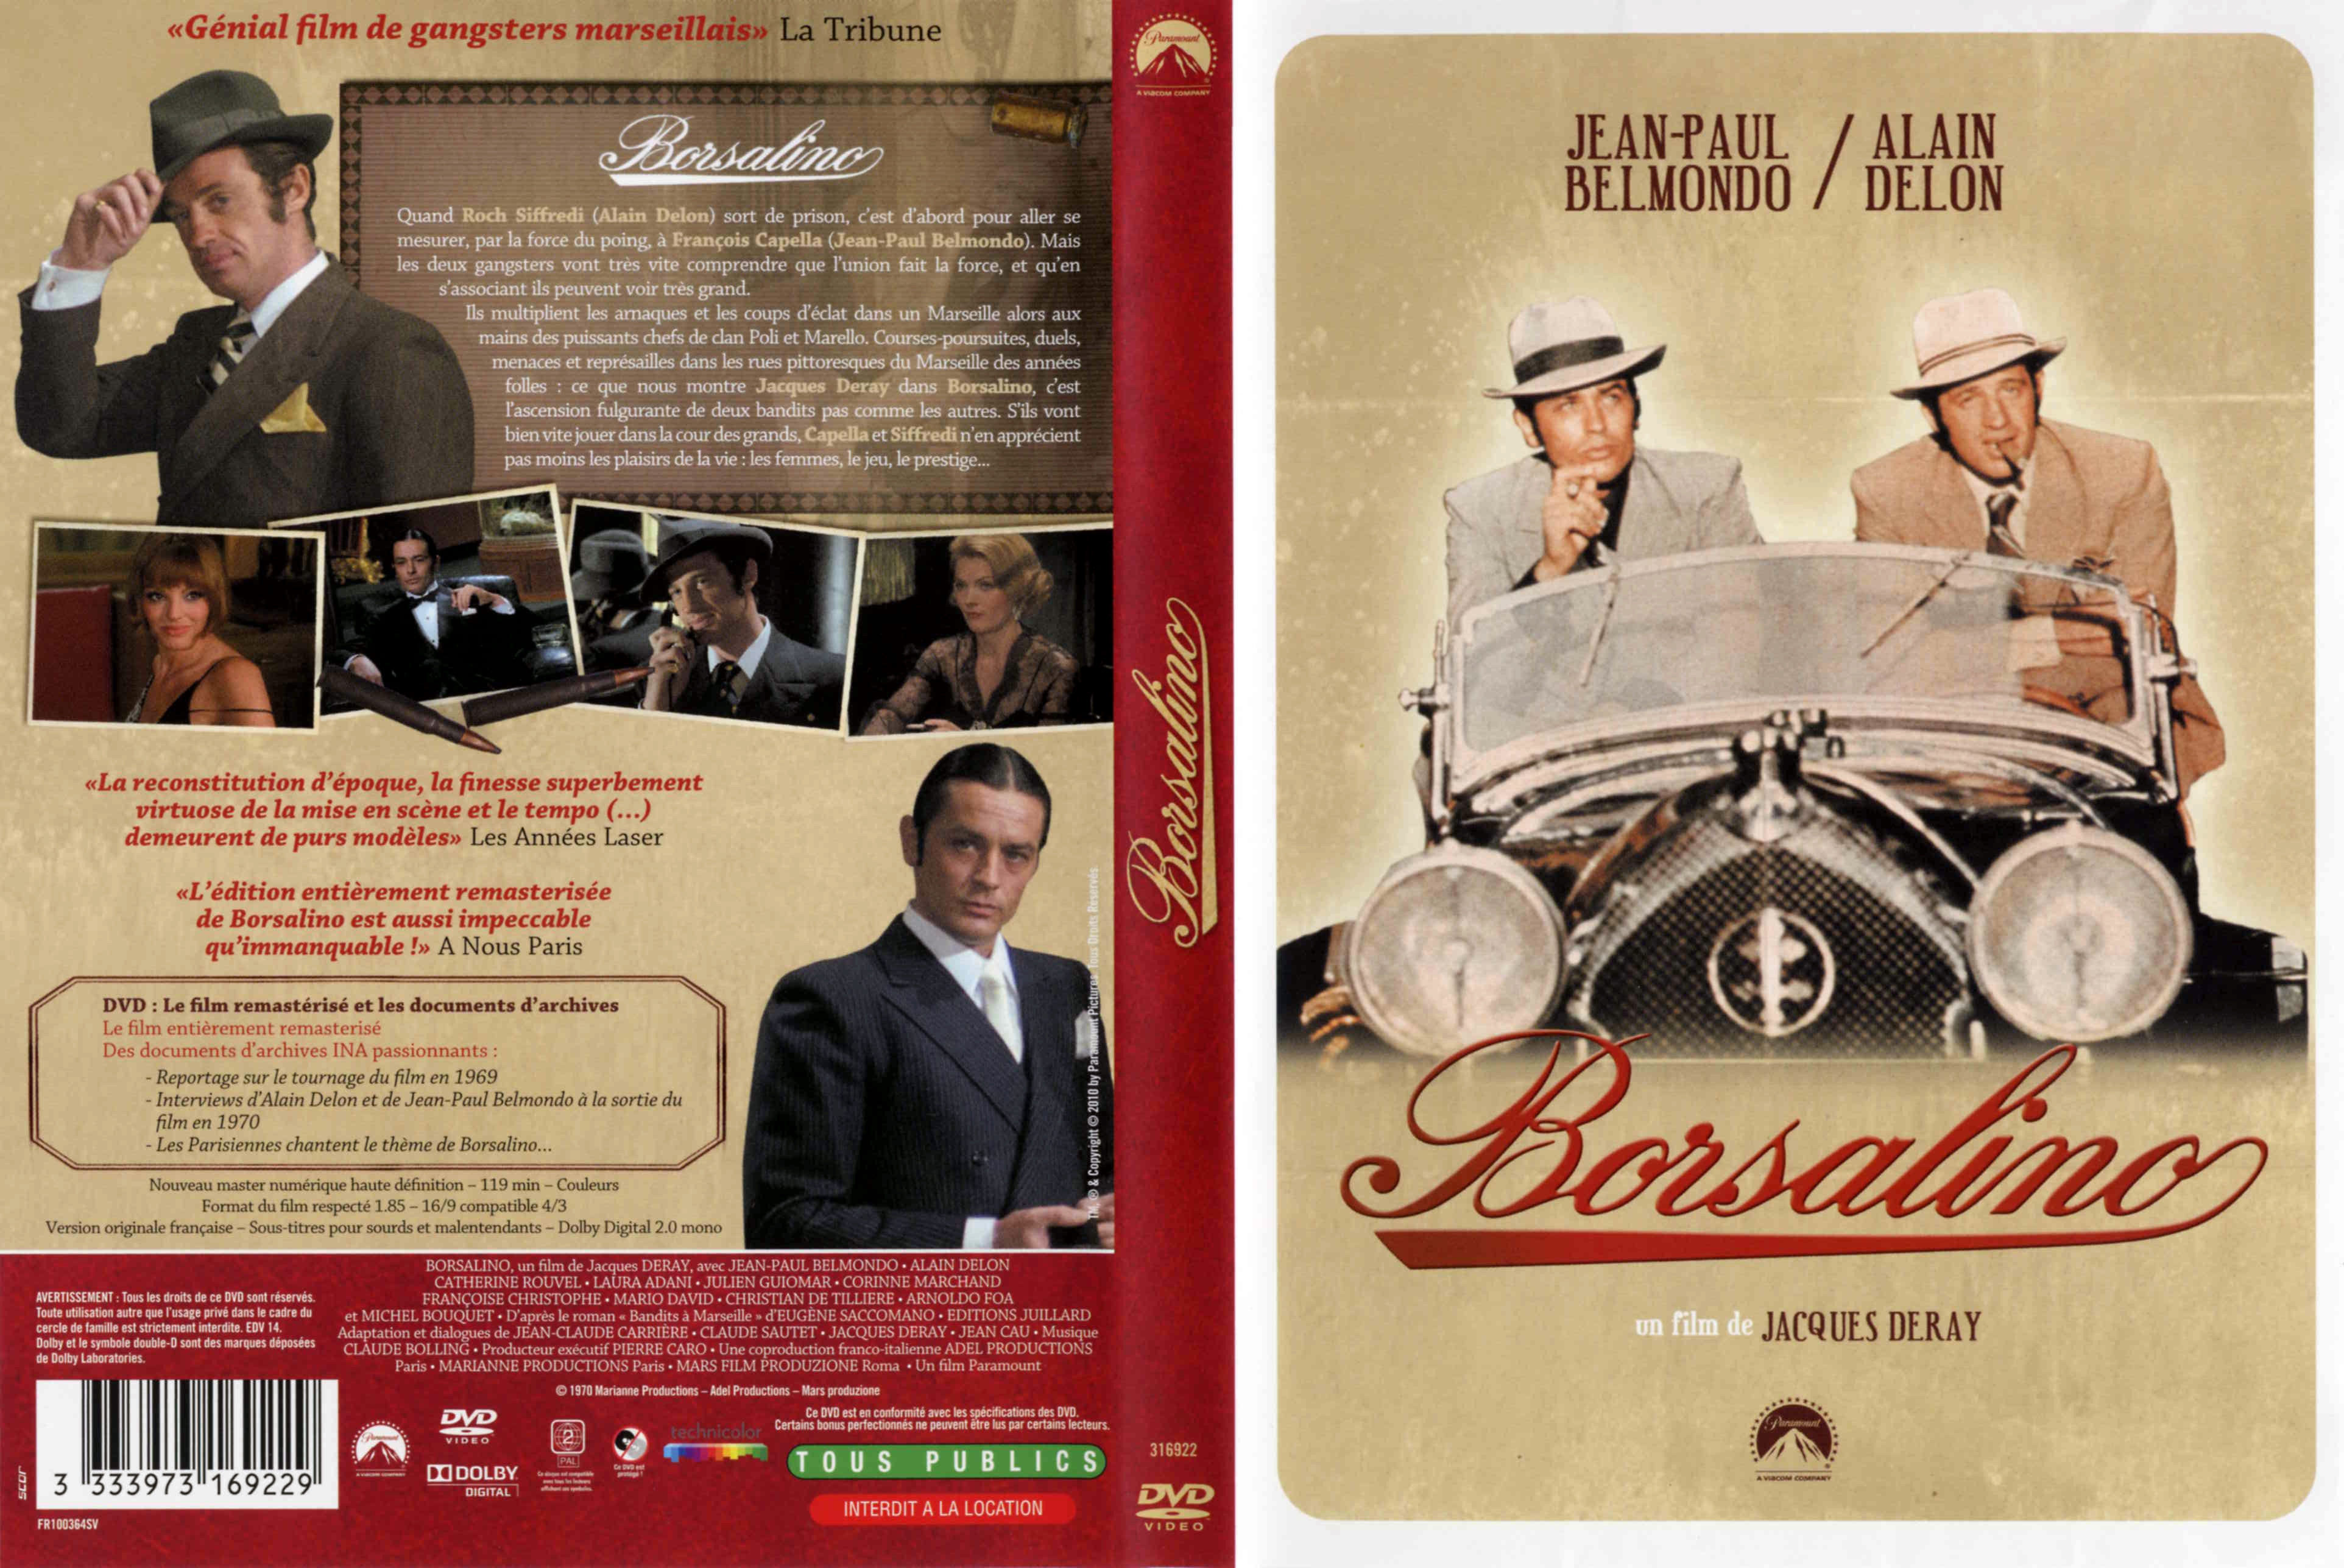 Jaquette DVD Borsalino v2